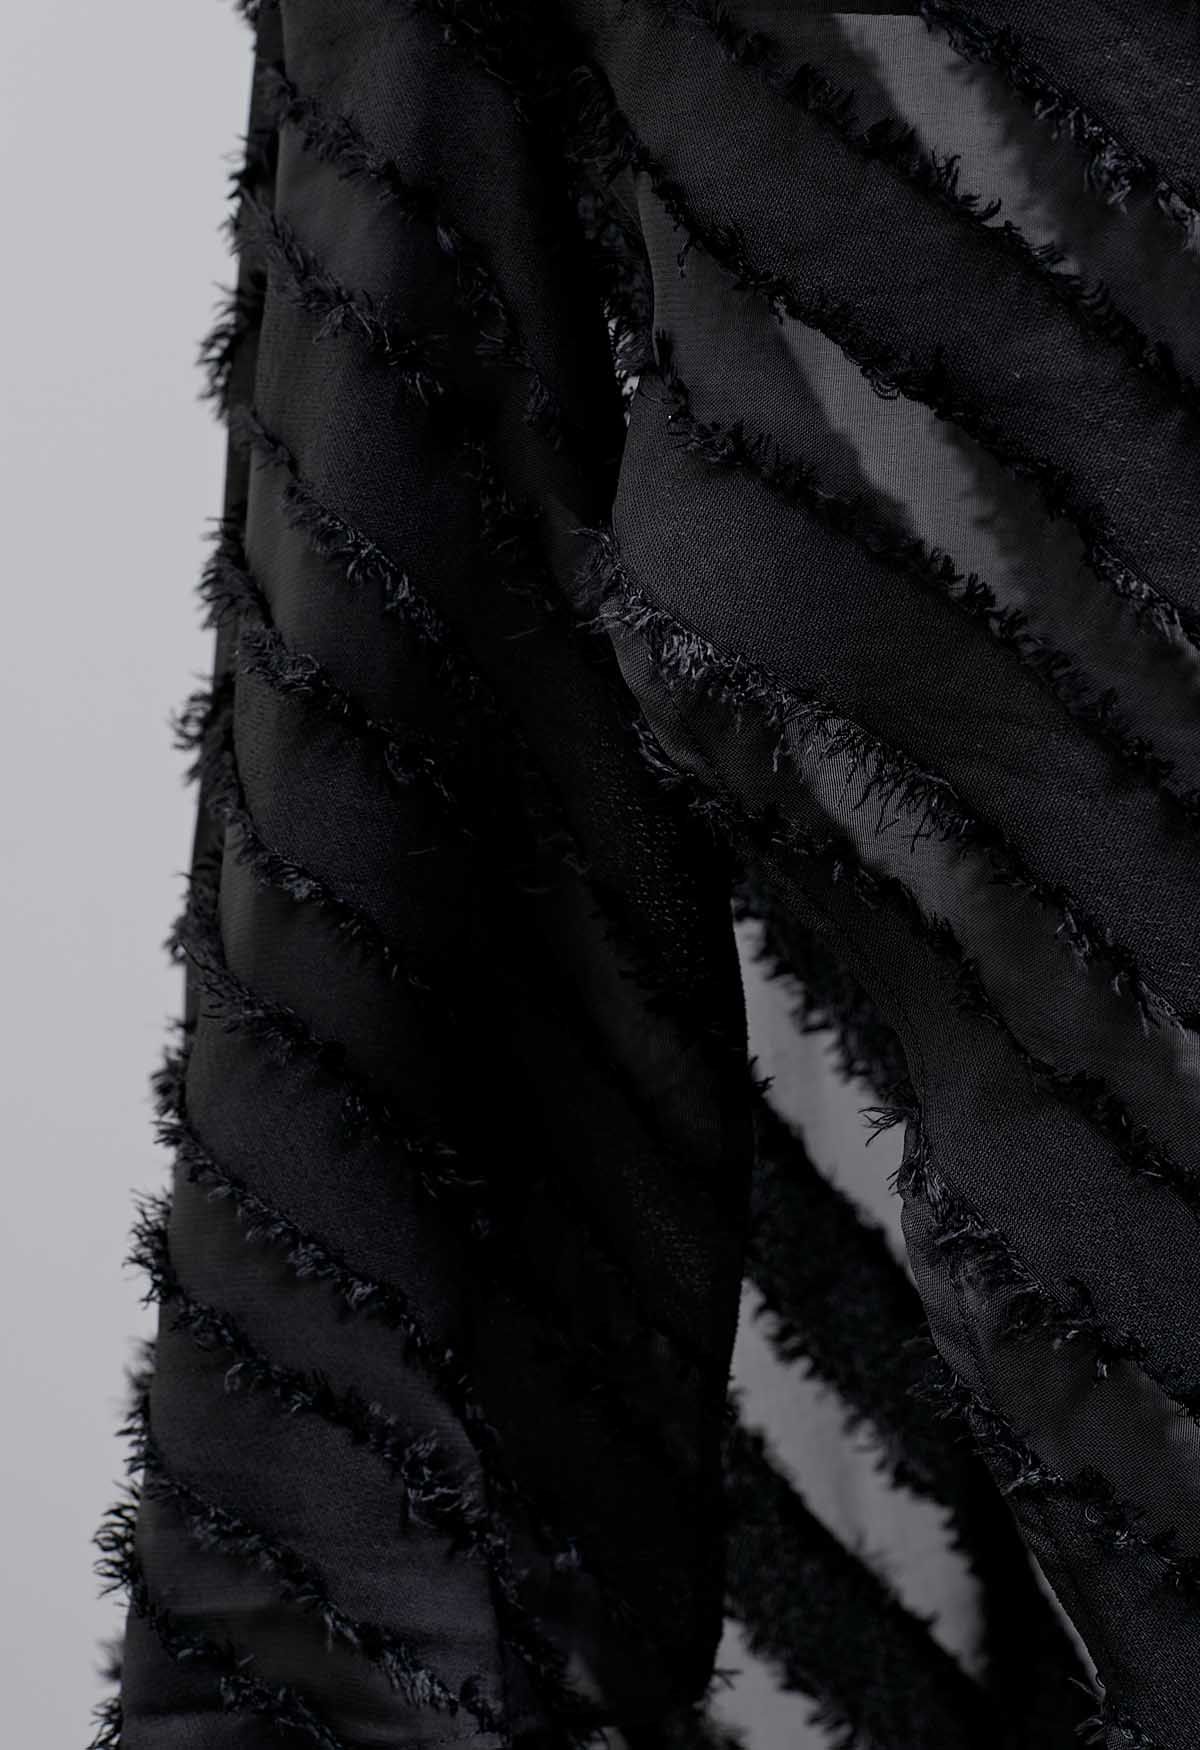 Vestido camisola con abertura y rayas con flecos en negro